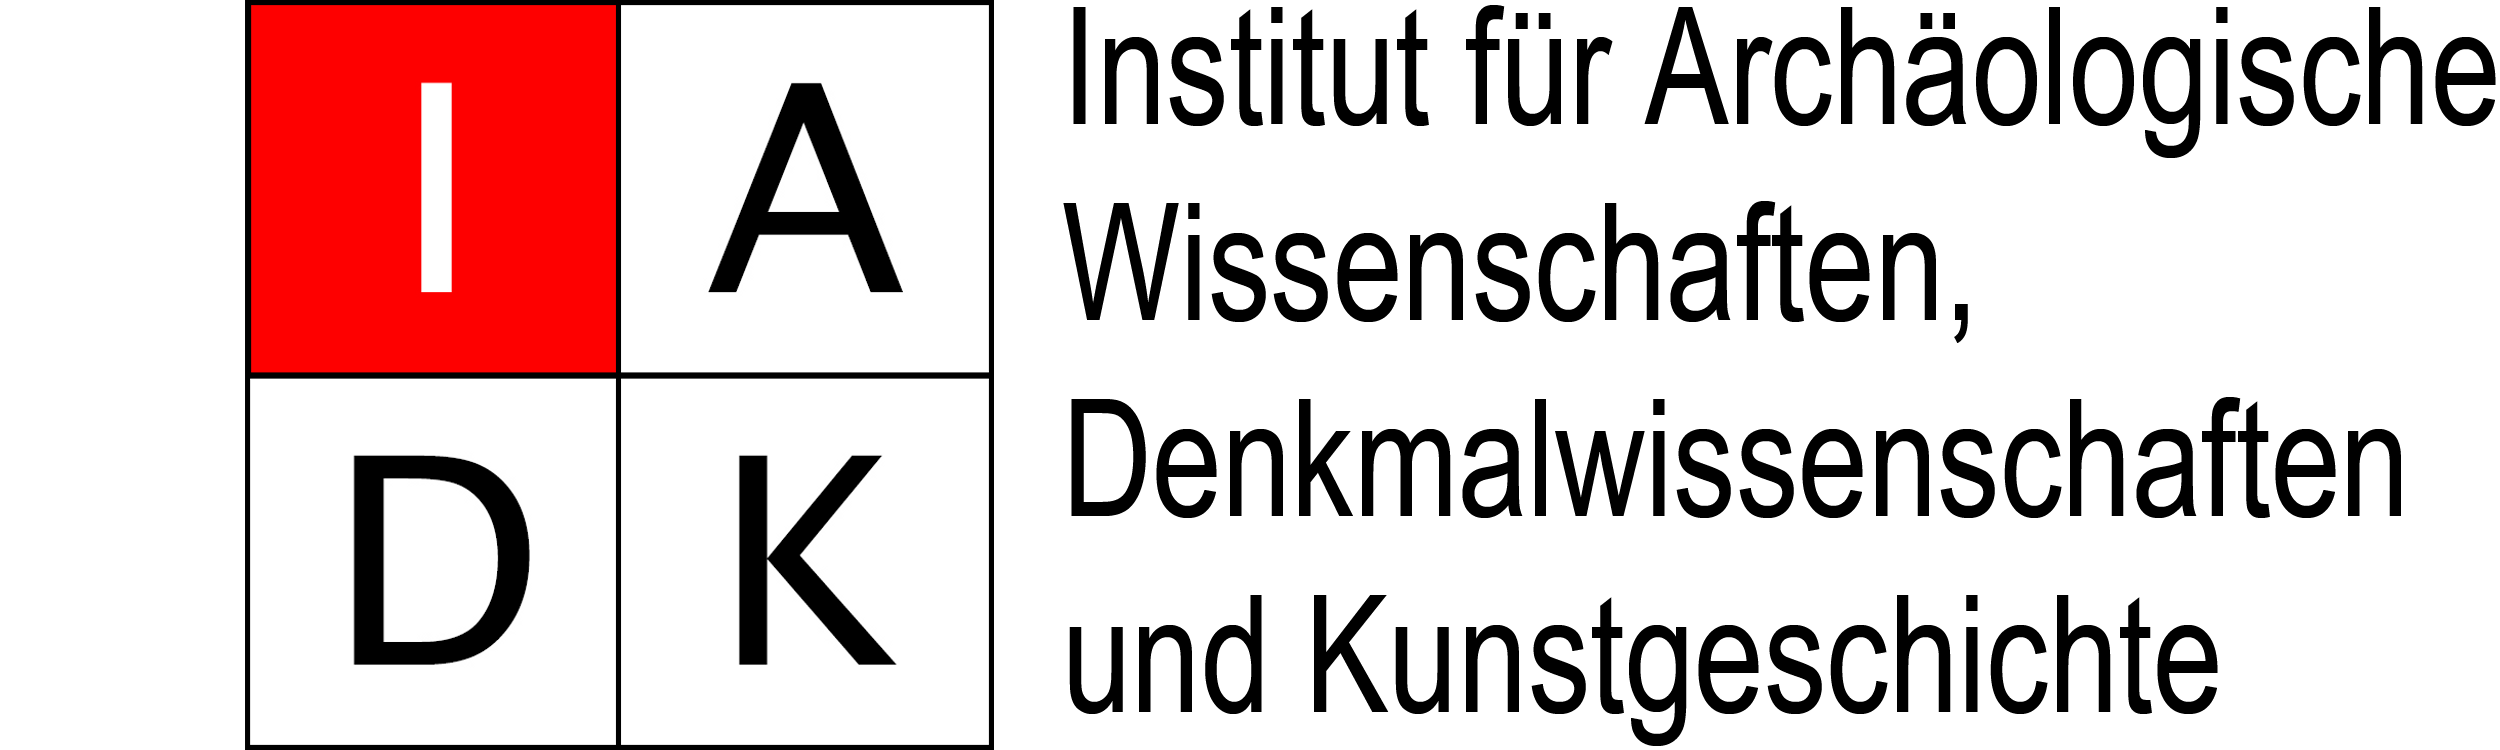 Logo des Instituts für Archäologische Wissenschaften, Denkmalwissenschaften und Kunstgeschichte (IADK)